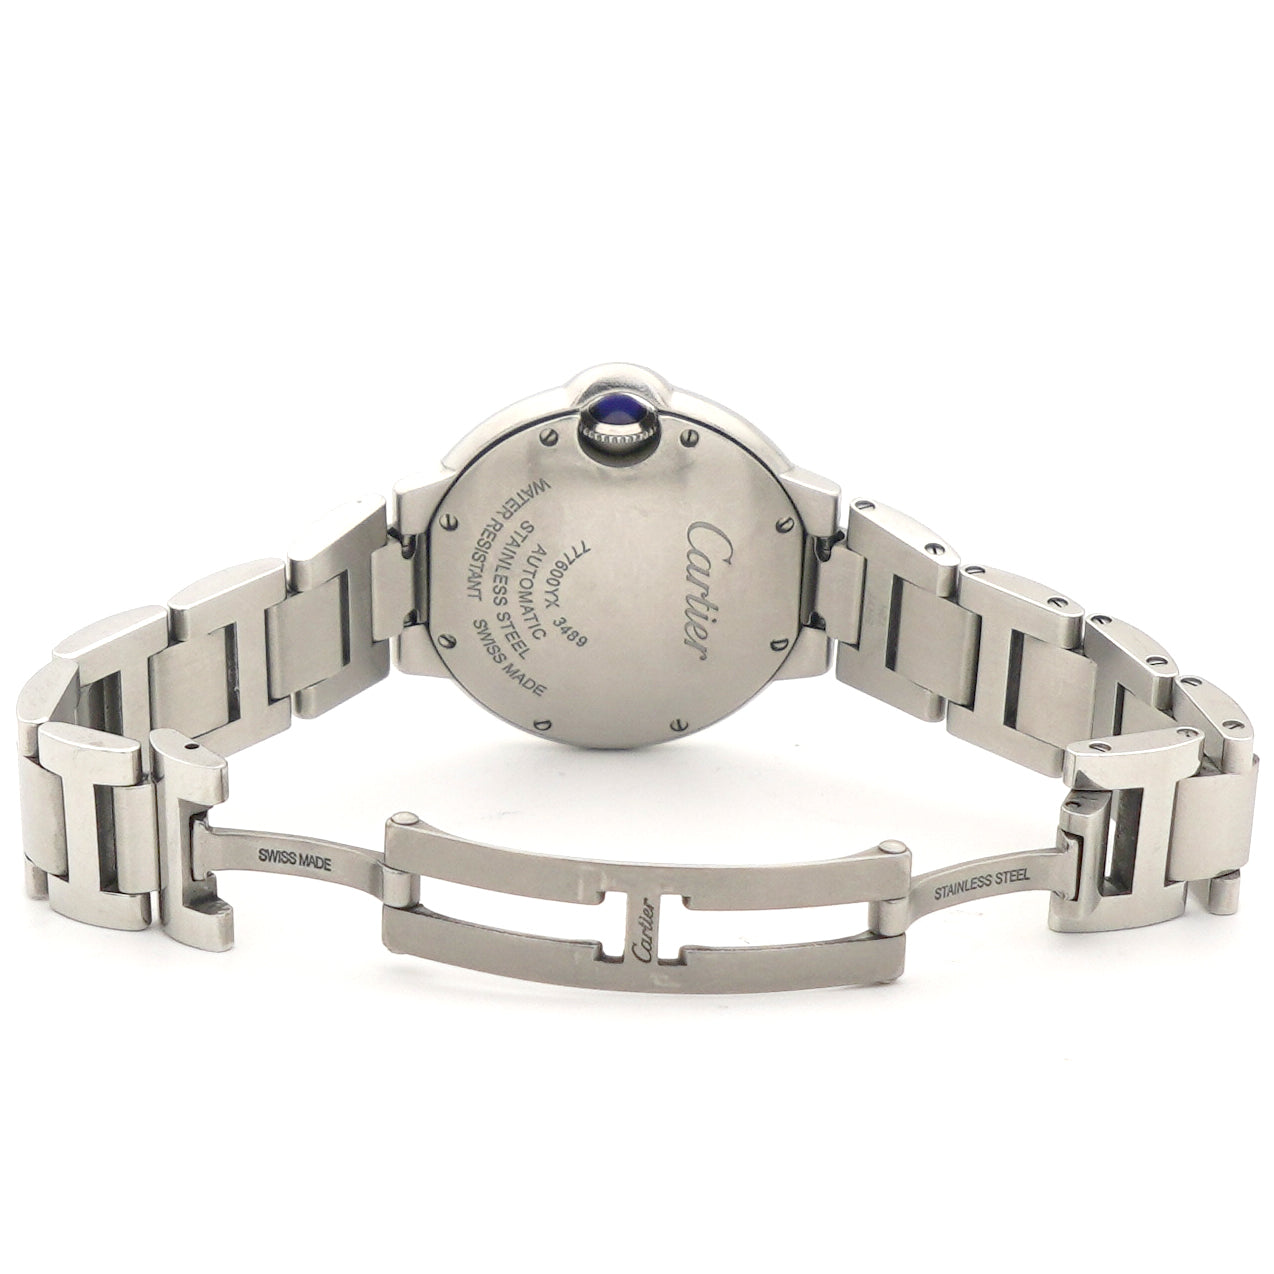 Stainless Steel 33mm Ballon Bleu De Cartier Automatic Watch